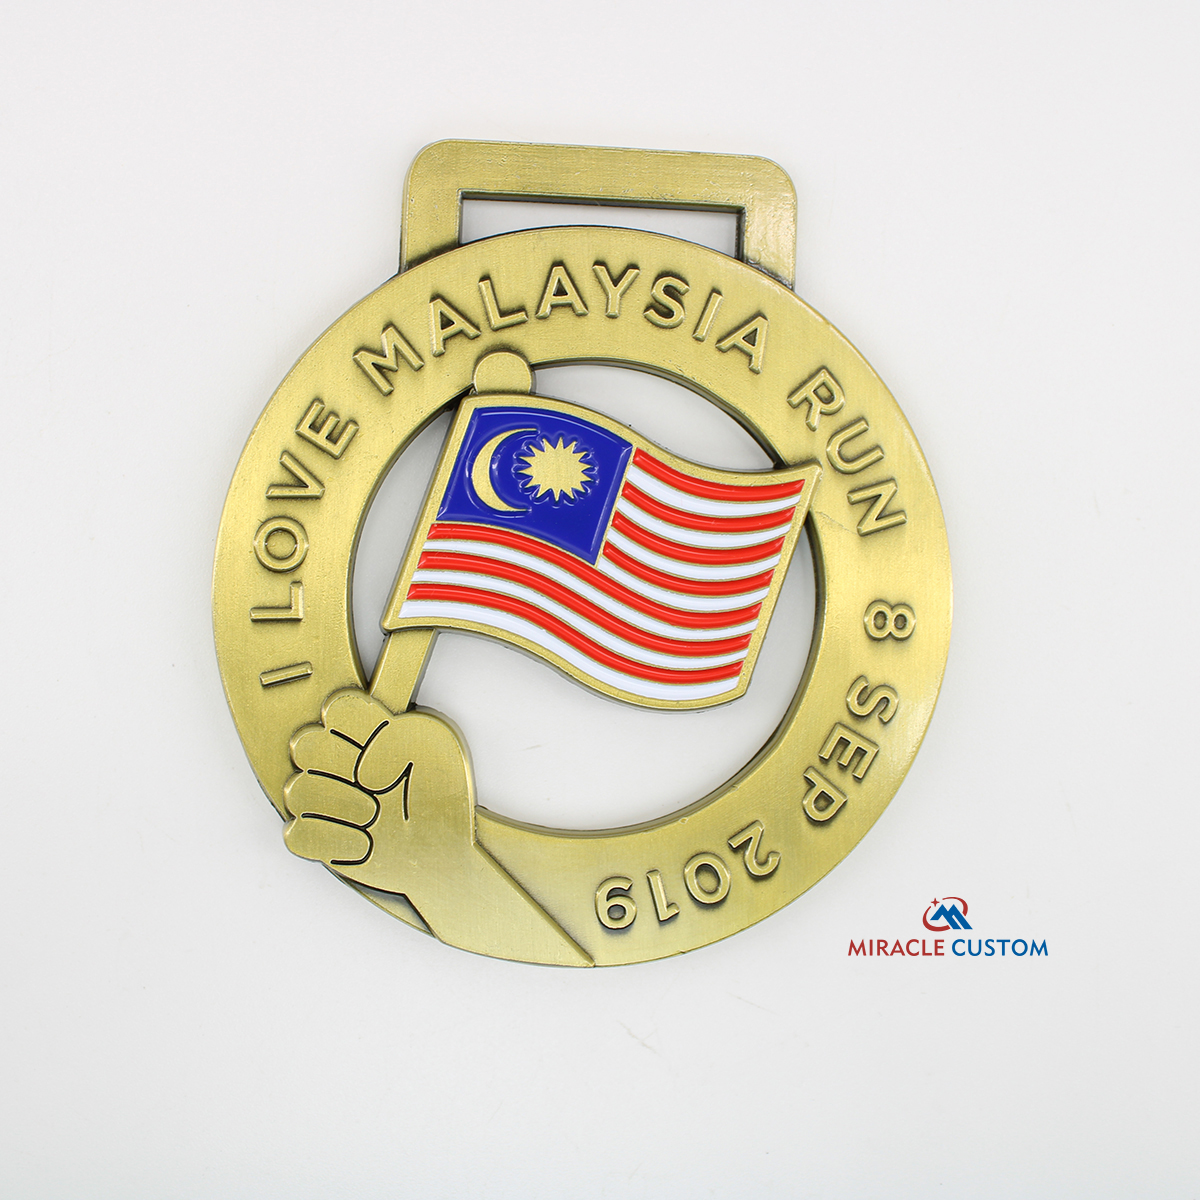 Custom I Love Malaysia Run Fun Run Medals